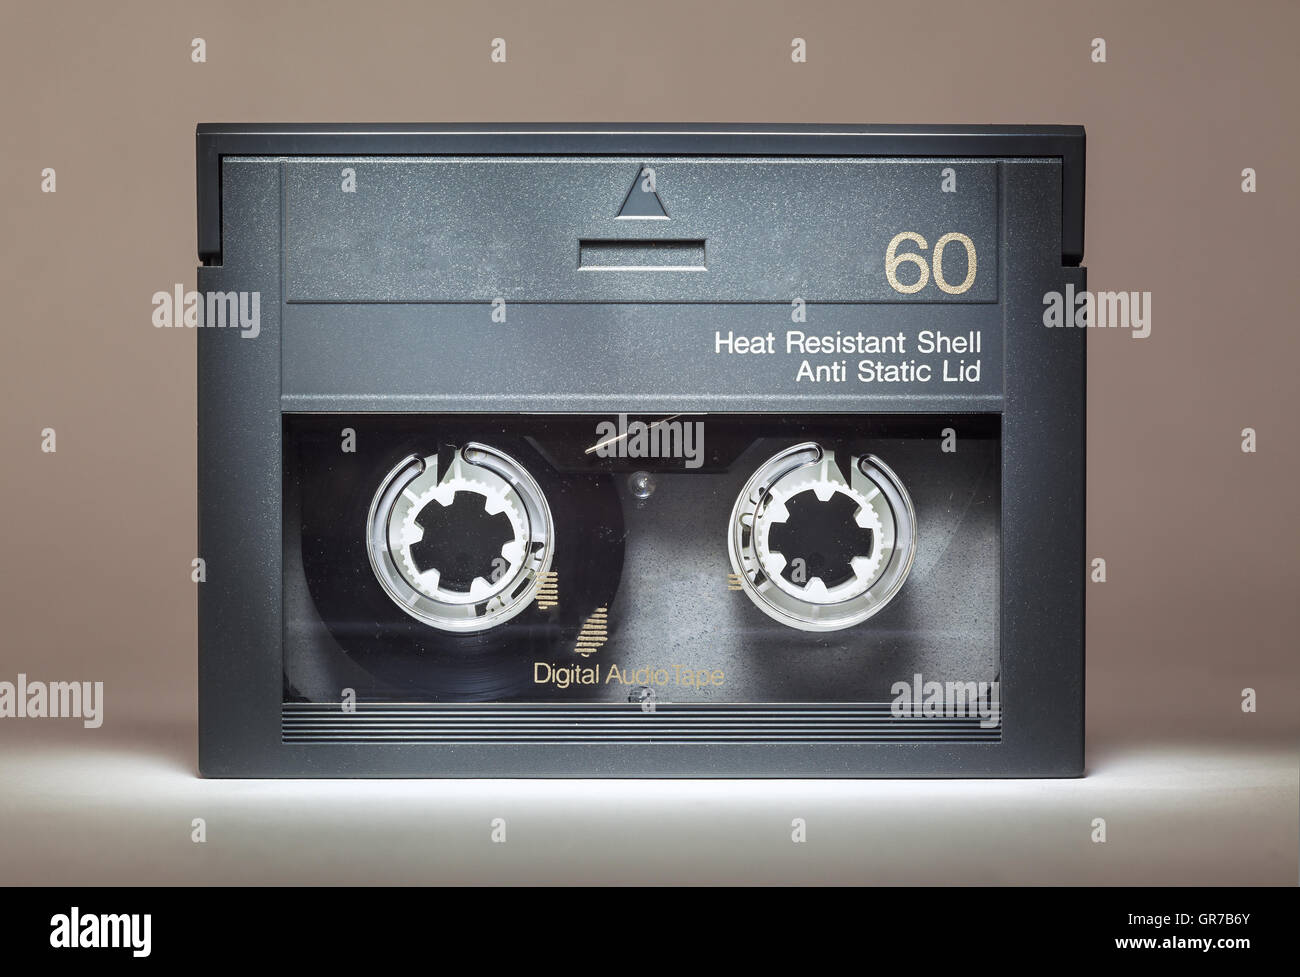 Détails d'un vieux dusty bande audio numérique, la technologie de rétro des années 90. Banque D'Images